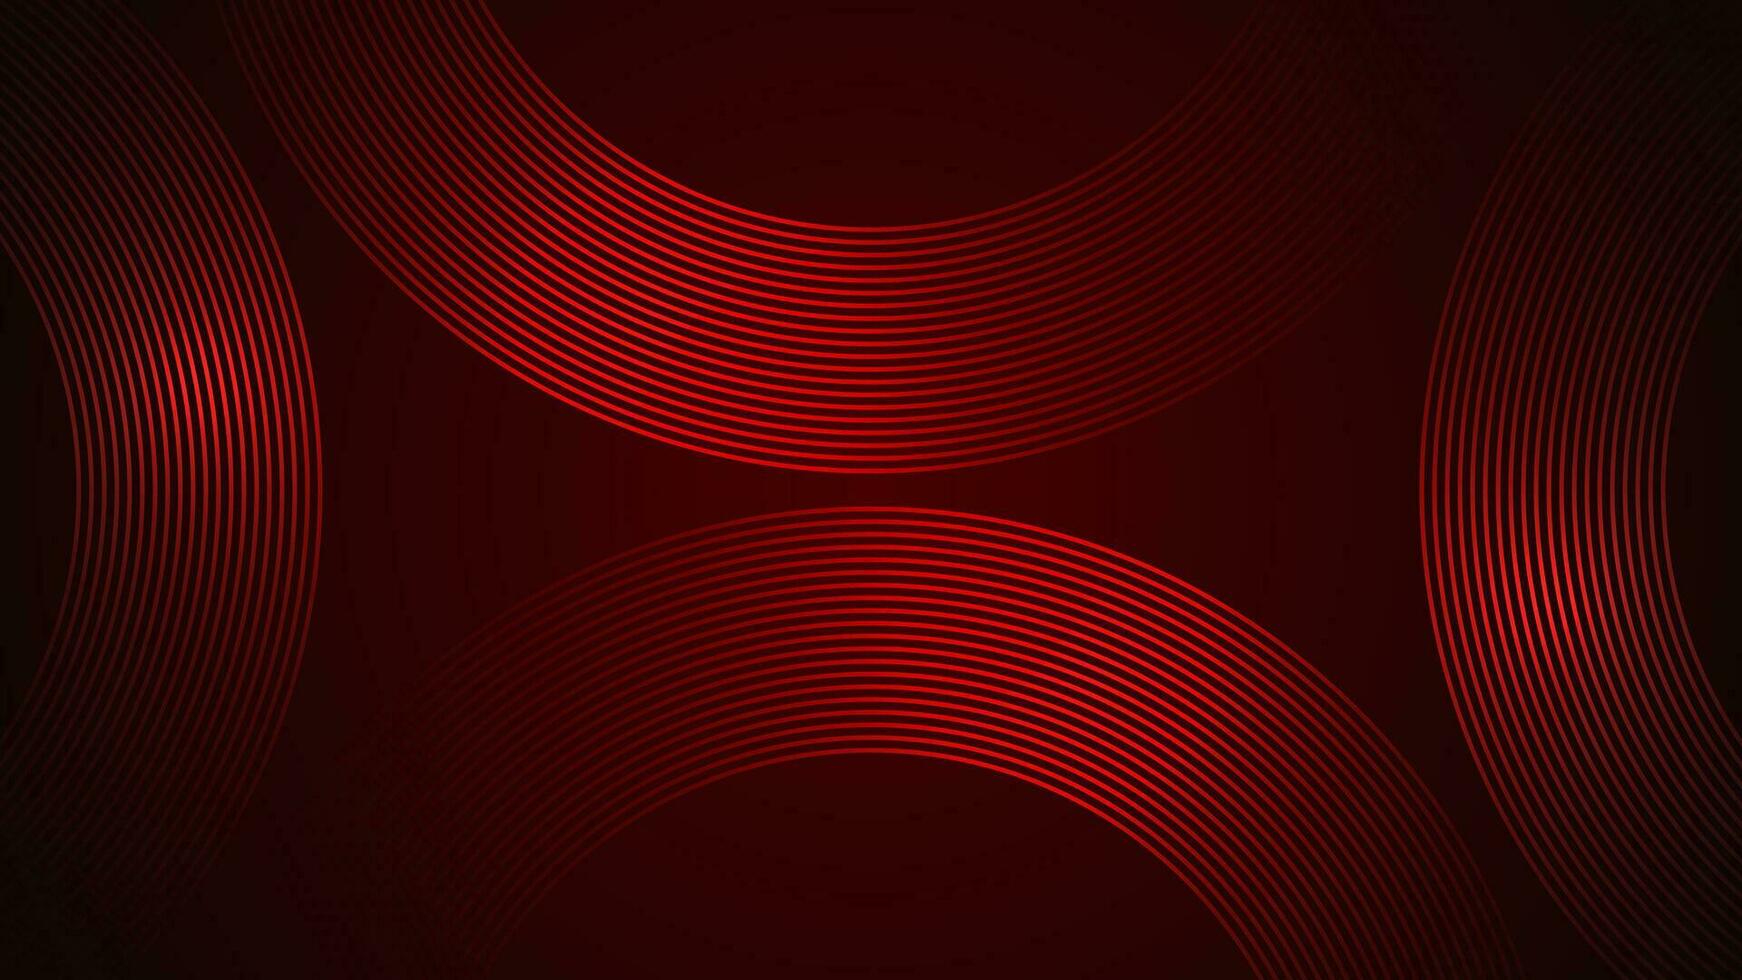 mörk röd enkel abstrakt bakgrund med rader i en böjd stil geometrisk stil som de huvud element. vektor